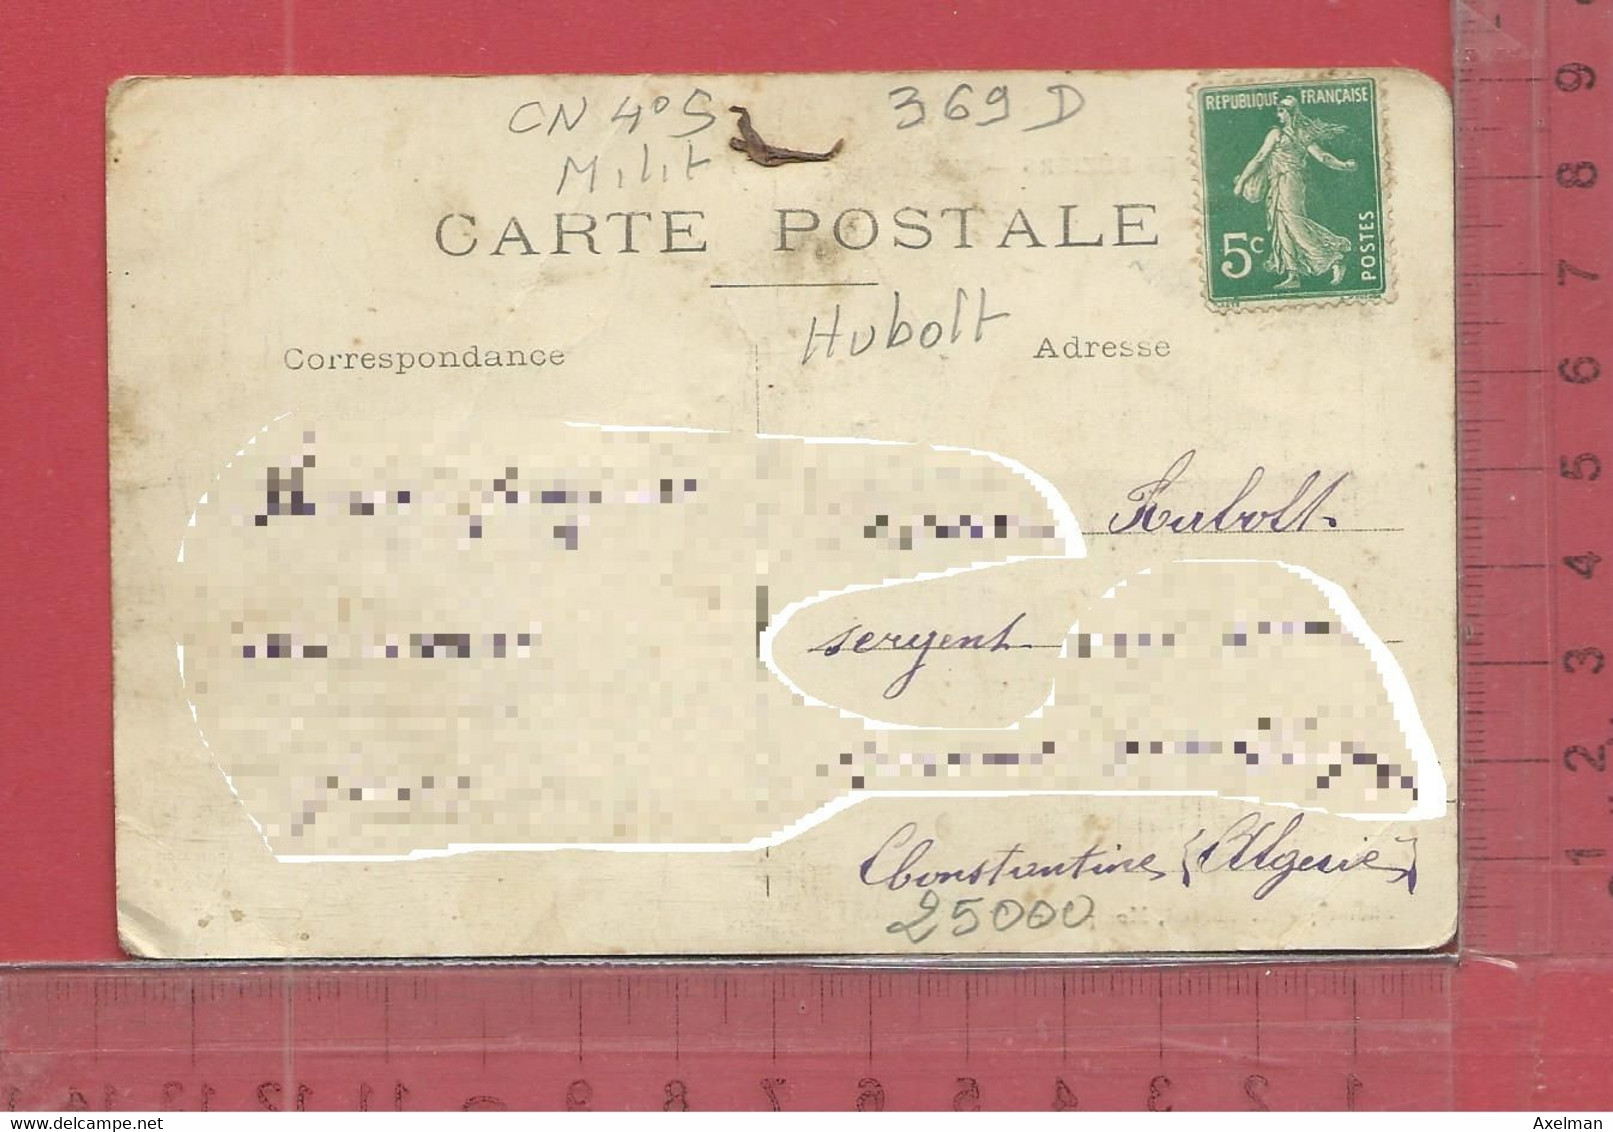 CARTE NOMINATIVE : Militaria  HUBOLT ( Zouave )  à 25000  Constantine  Algérie - Genealogy